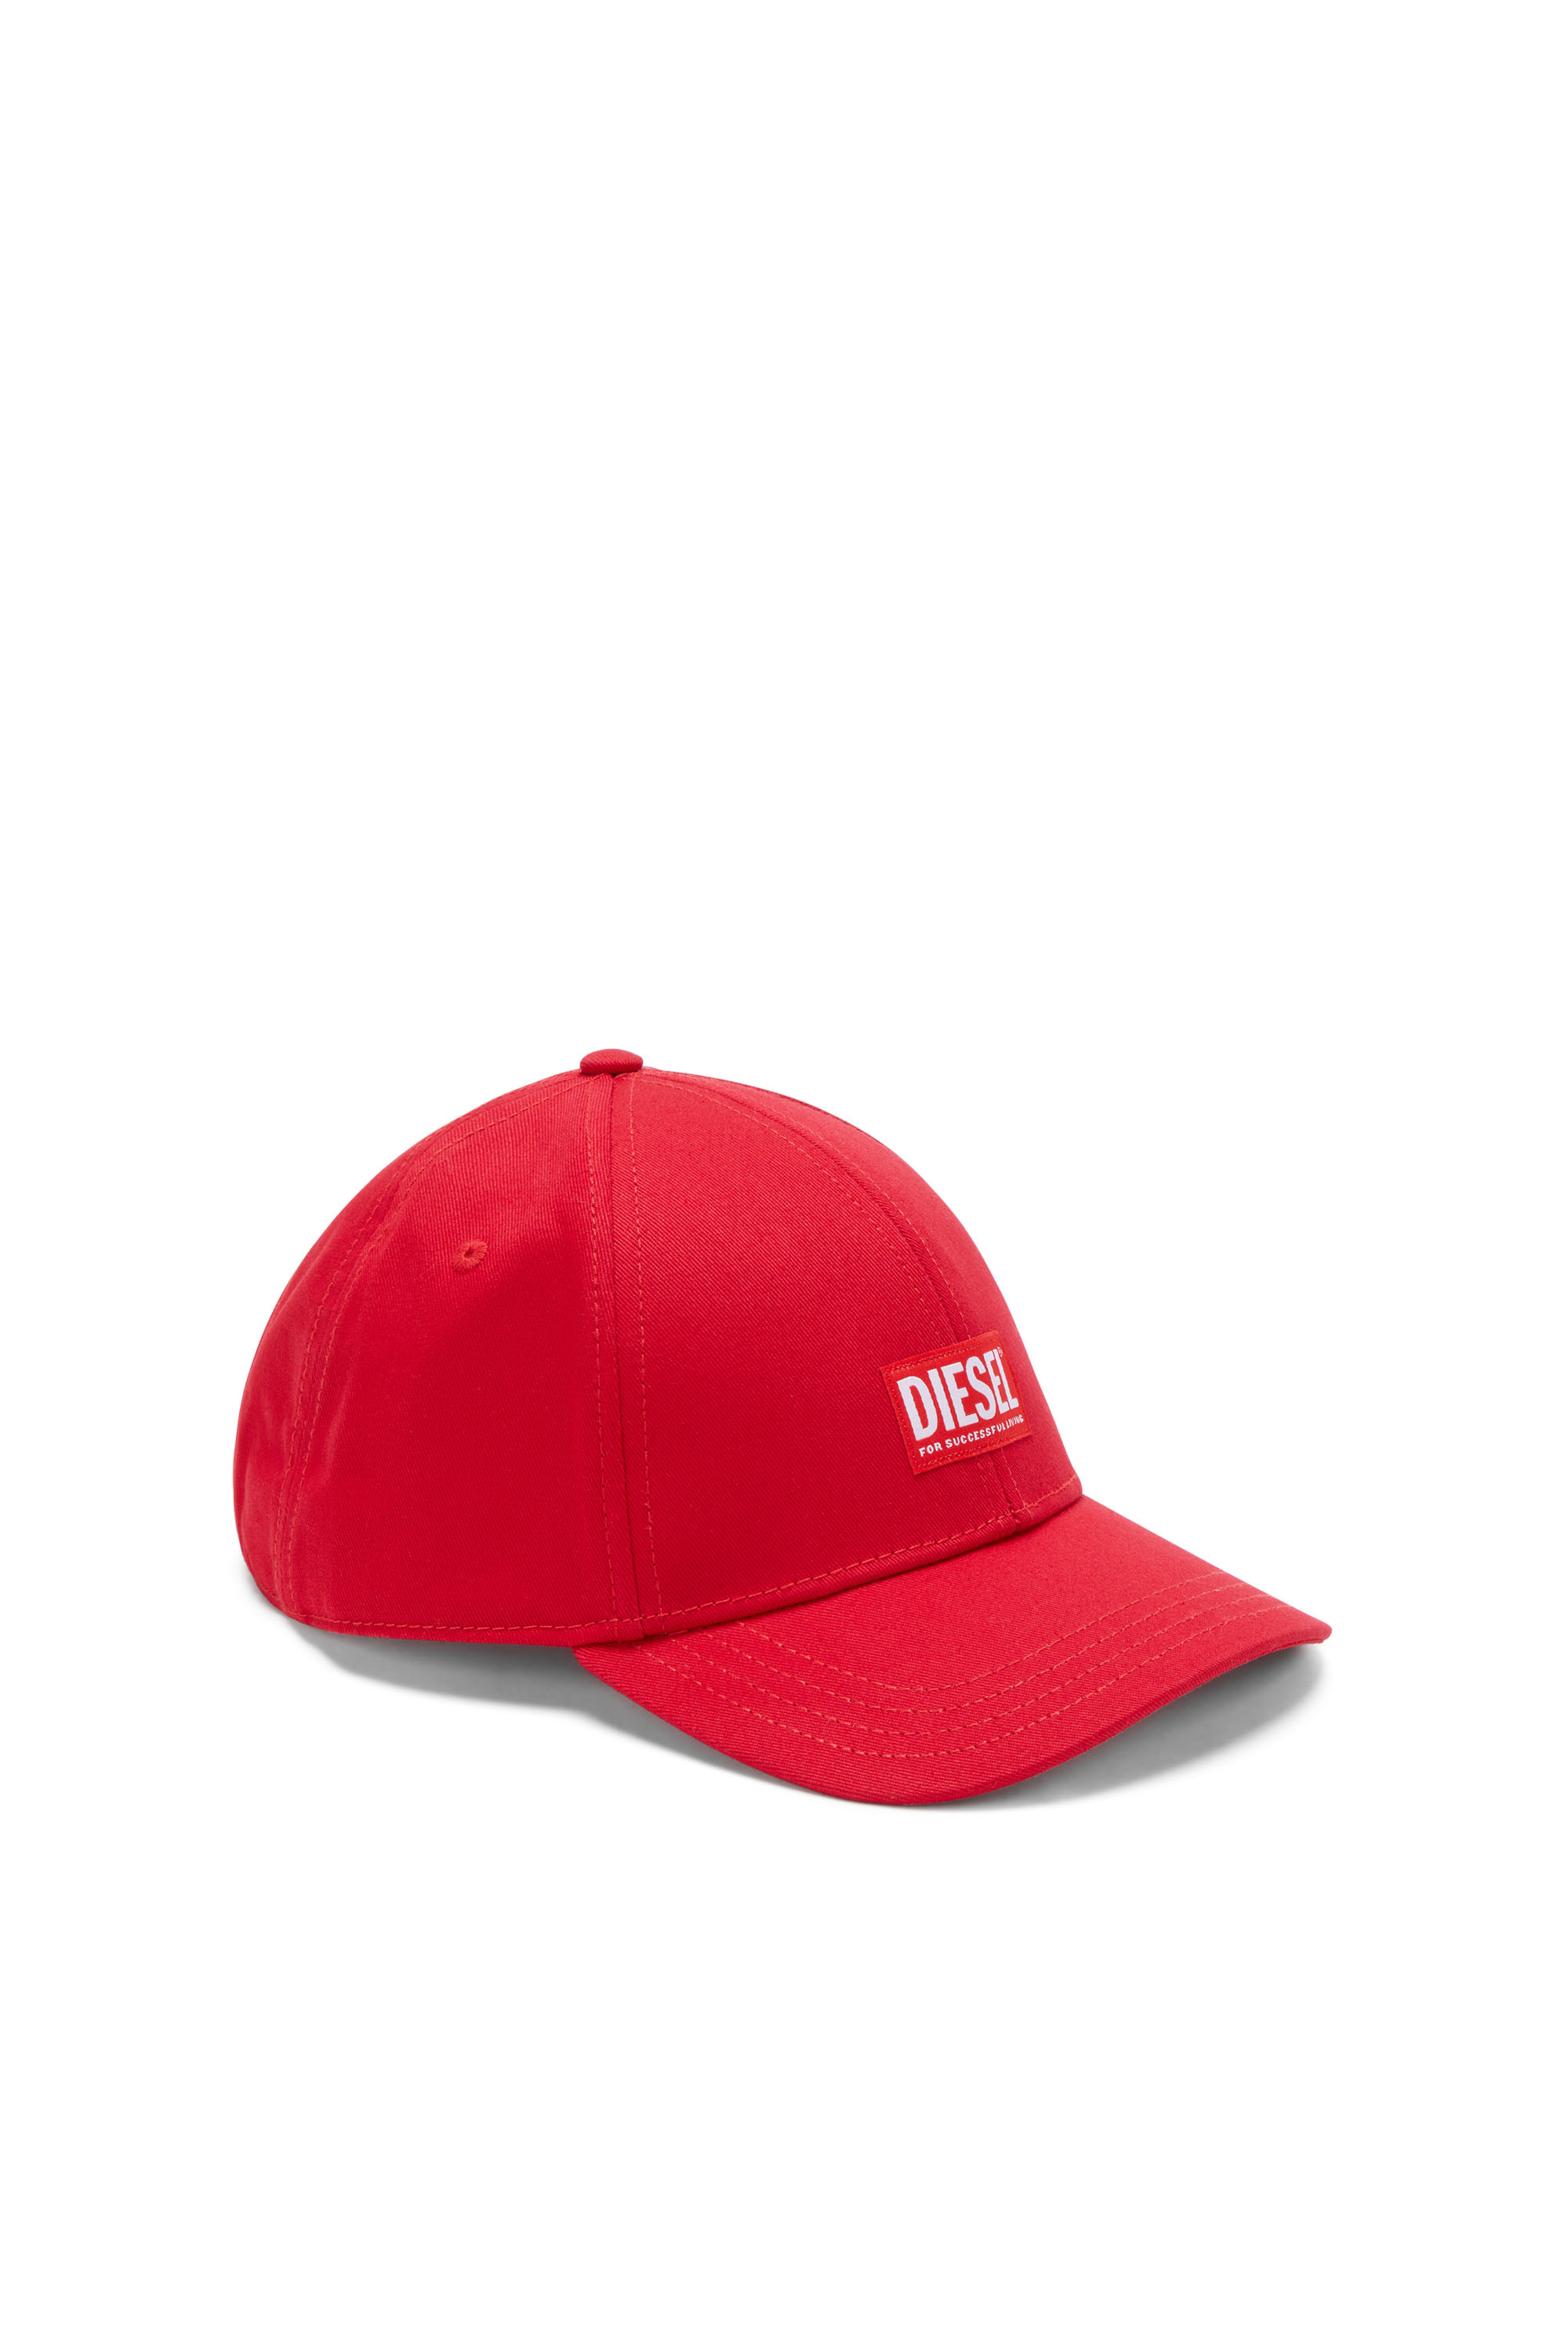 Diesel - Berretto da baseball con logo applicato - Cappelli - Uomo - Rosso